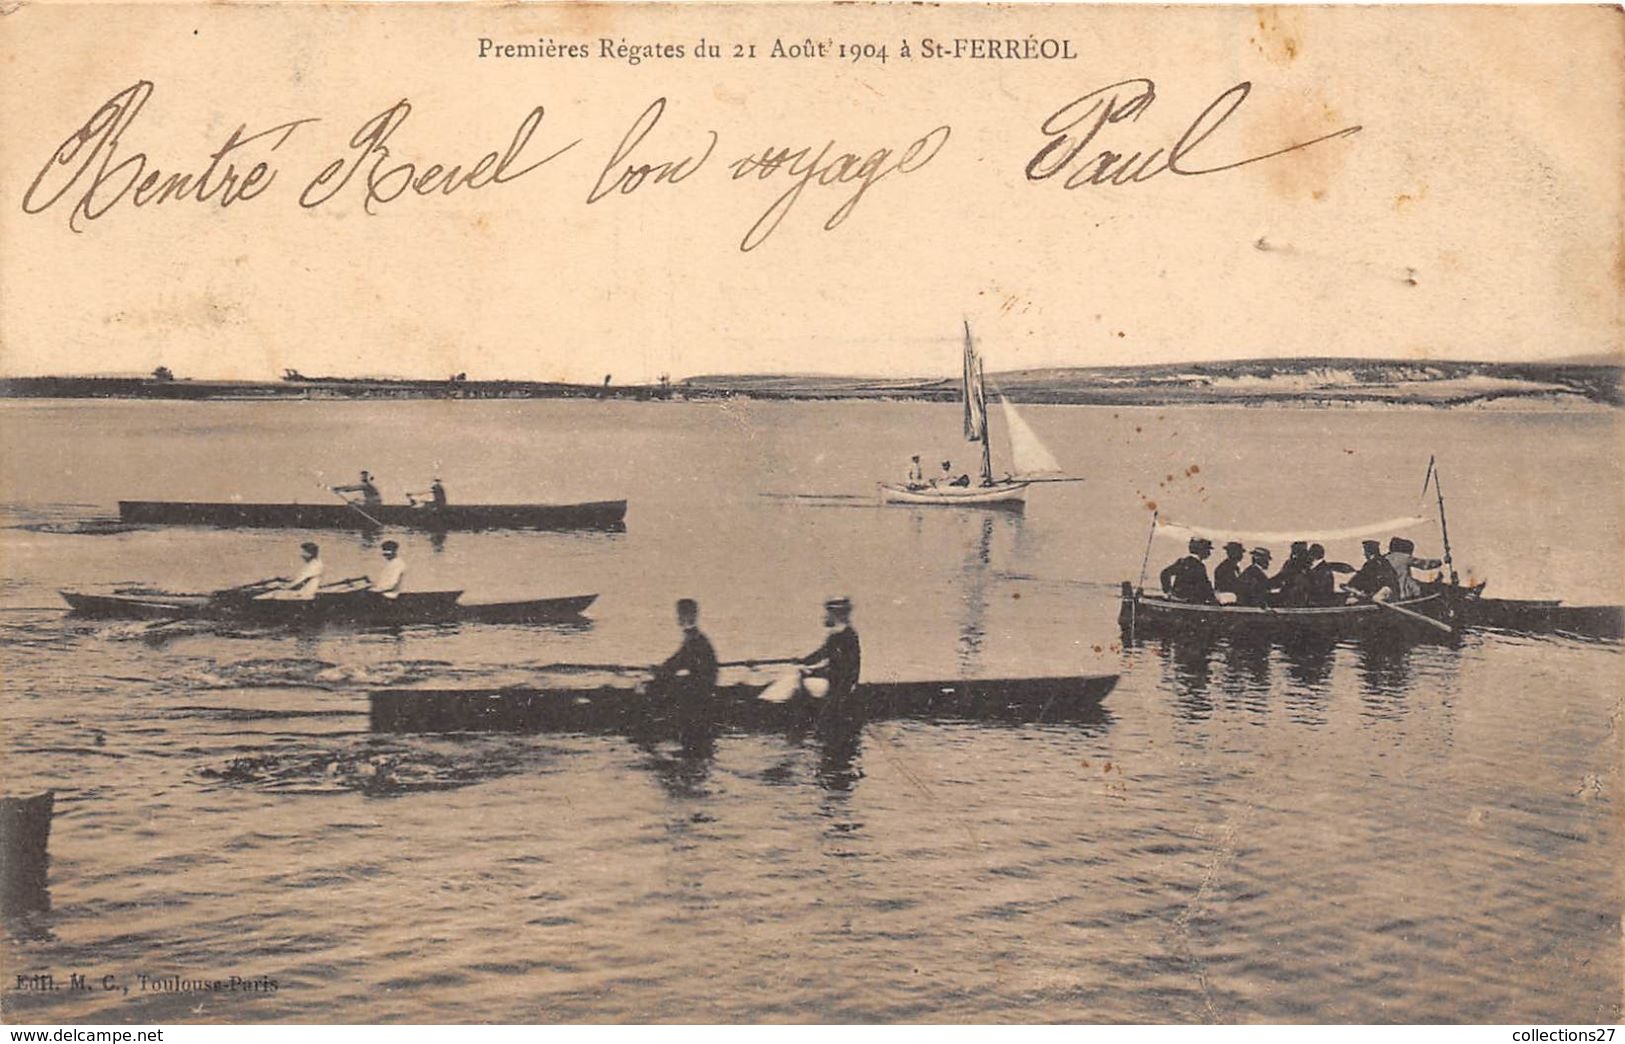 31-SAINT-FERREOL- PREMIERES REGATES DU 21 AOUT 1904 - Saint Ferreol